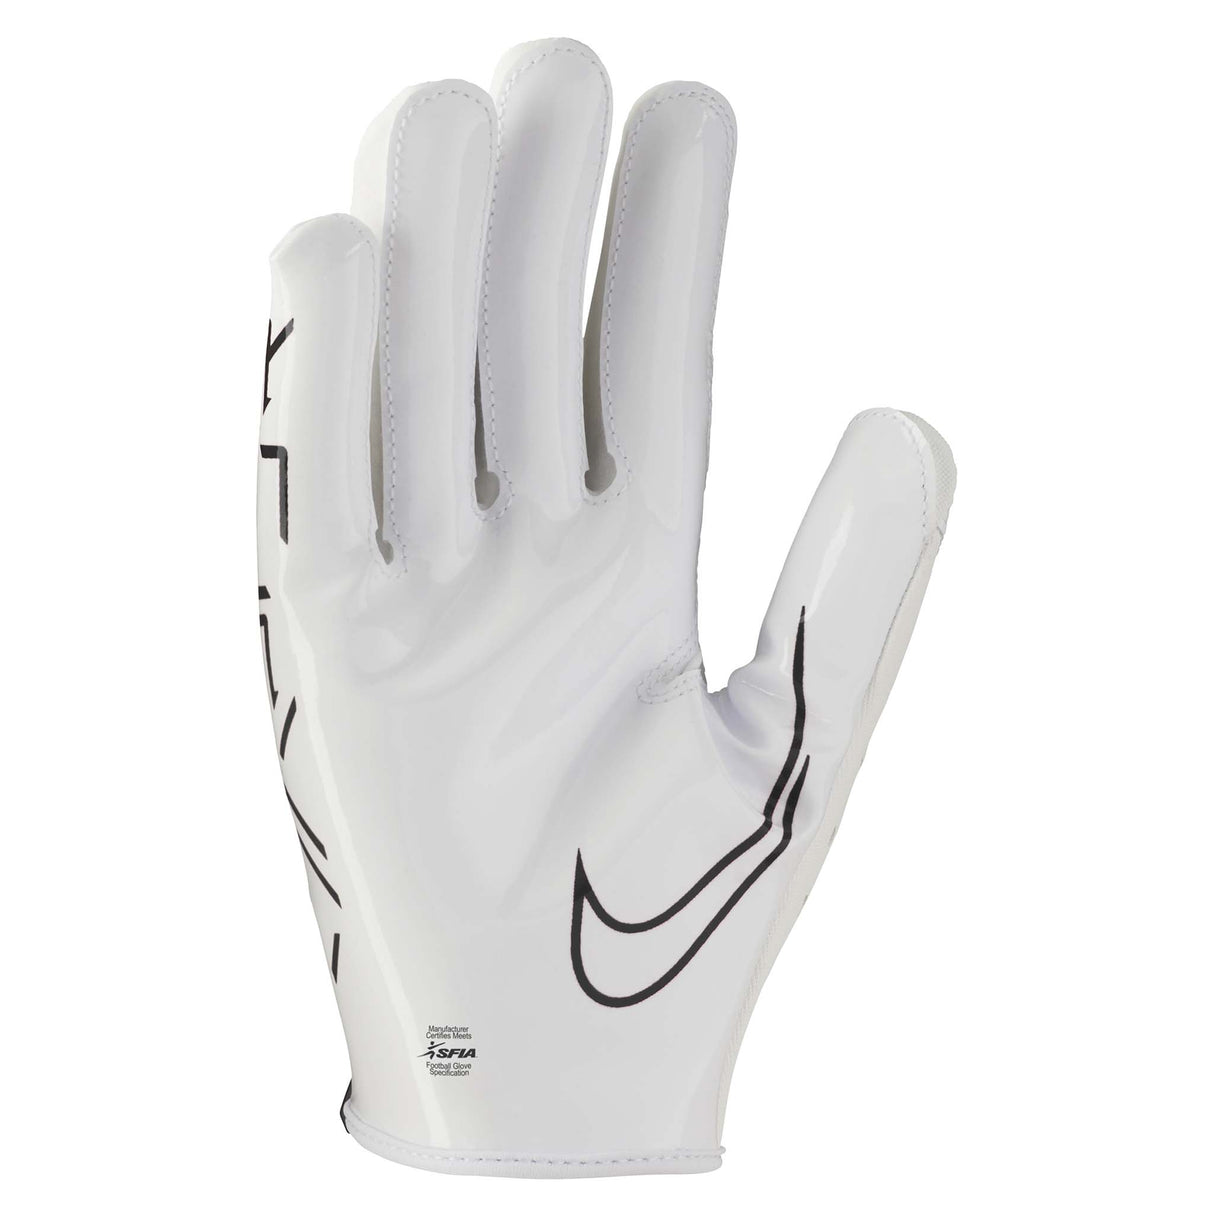 Nike Youth Vapor Jet 7.0 FG gants de football américain blanc blanc noir pour enfants paume